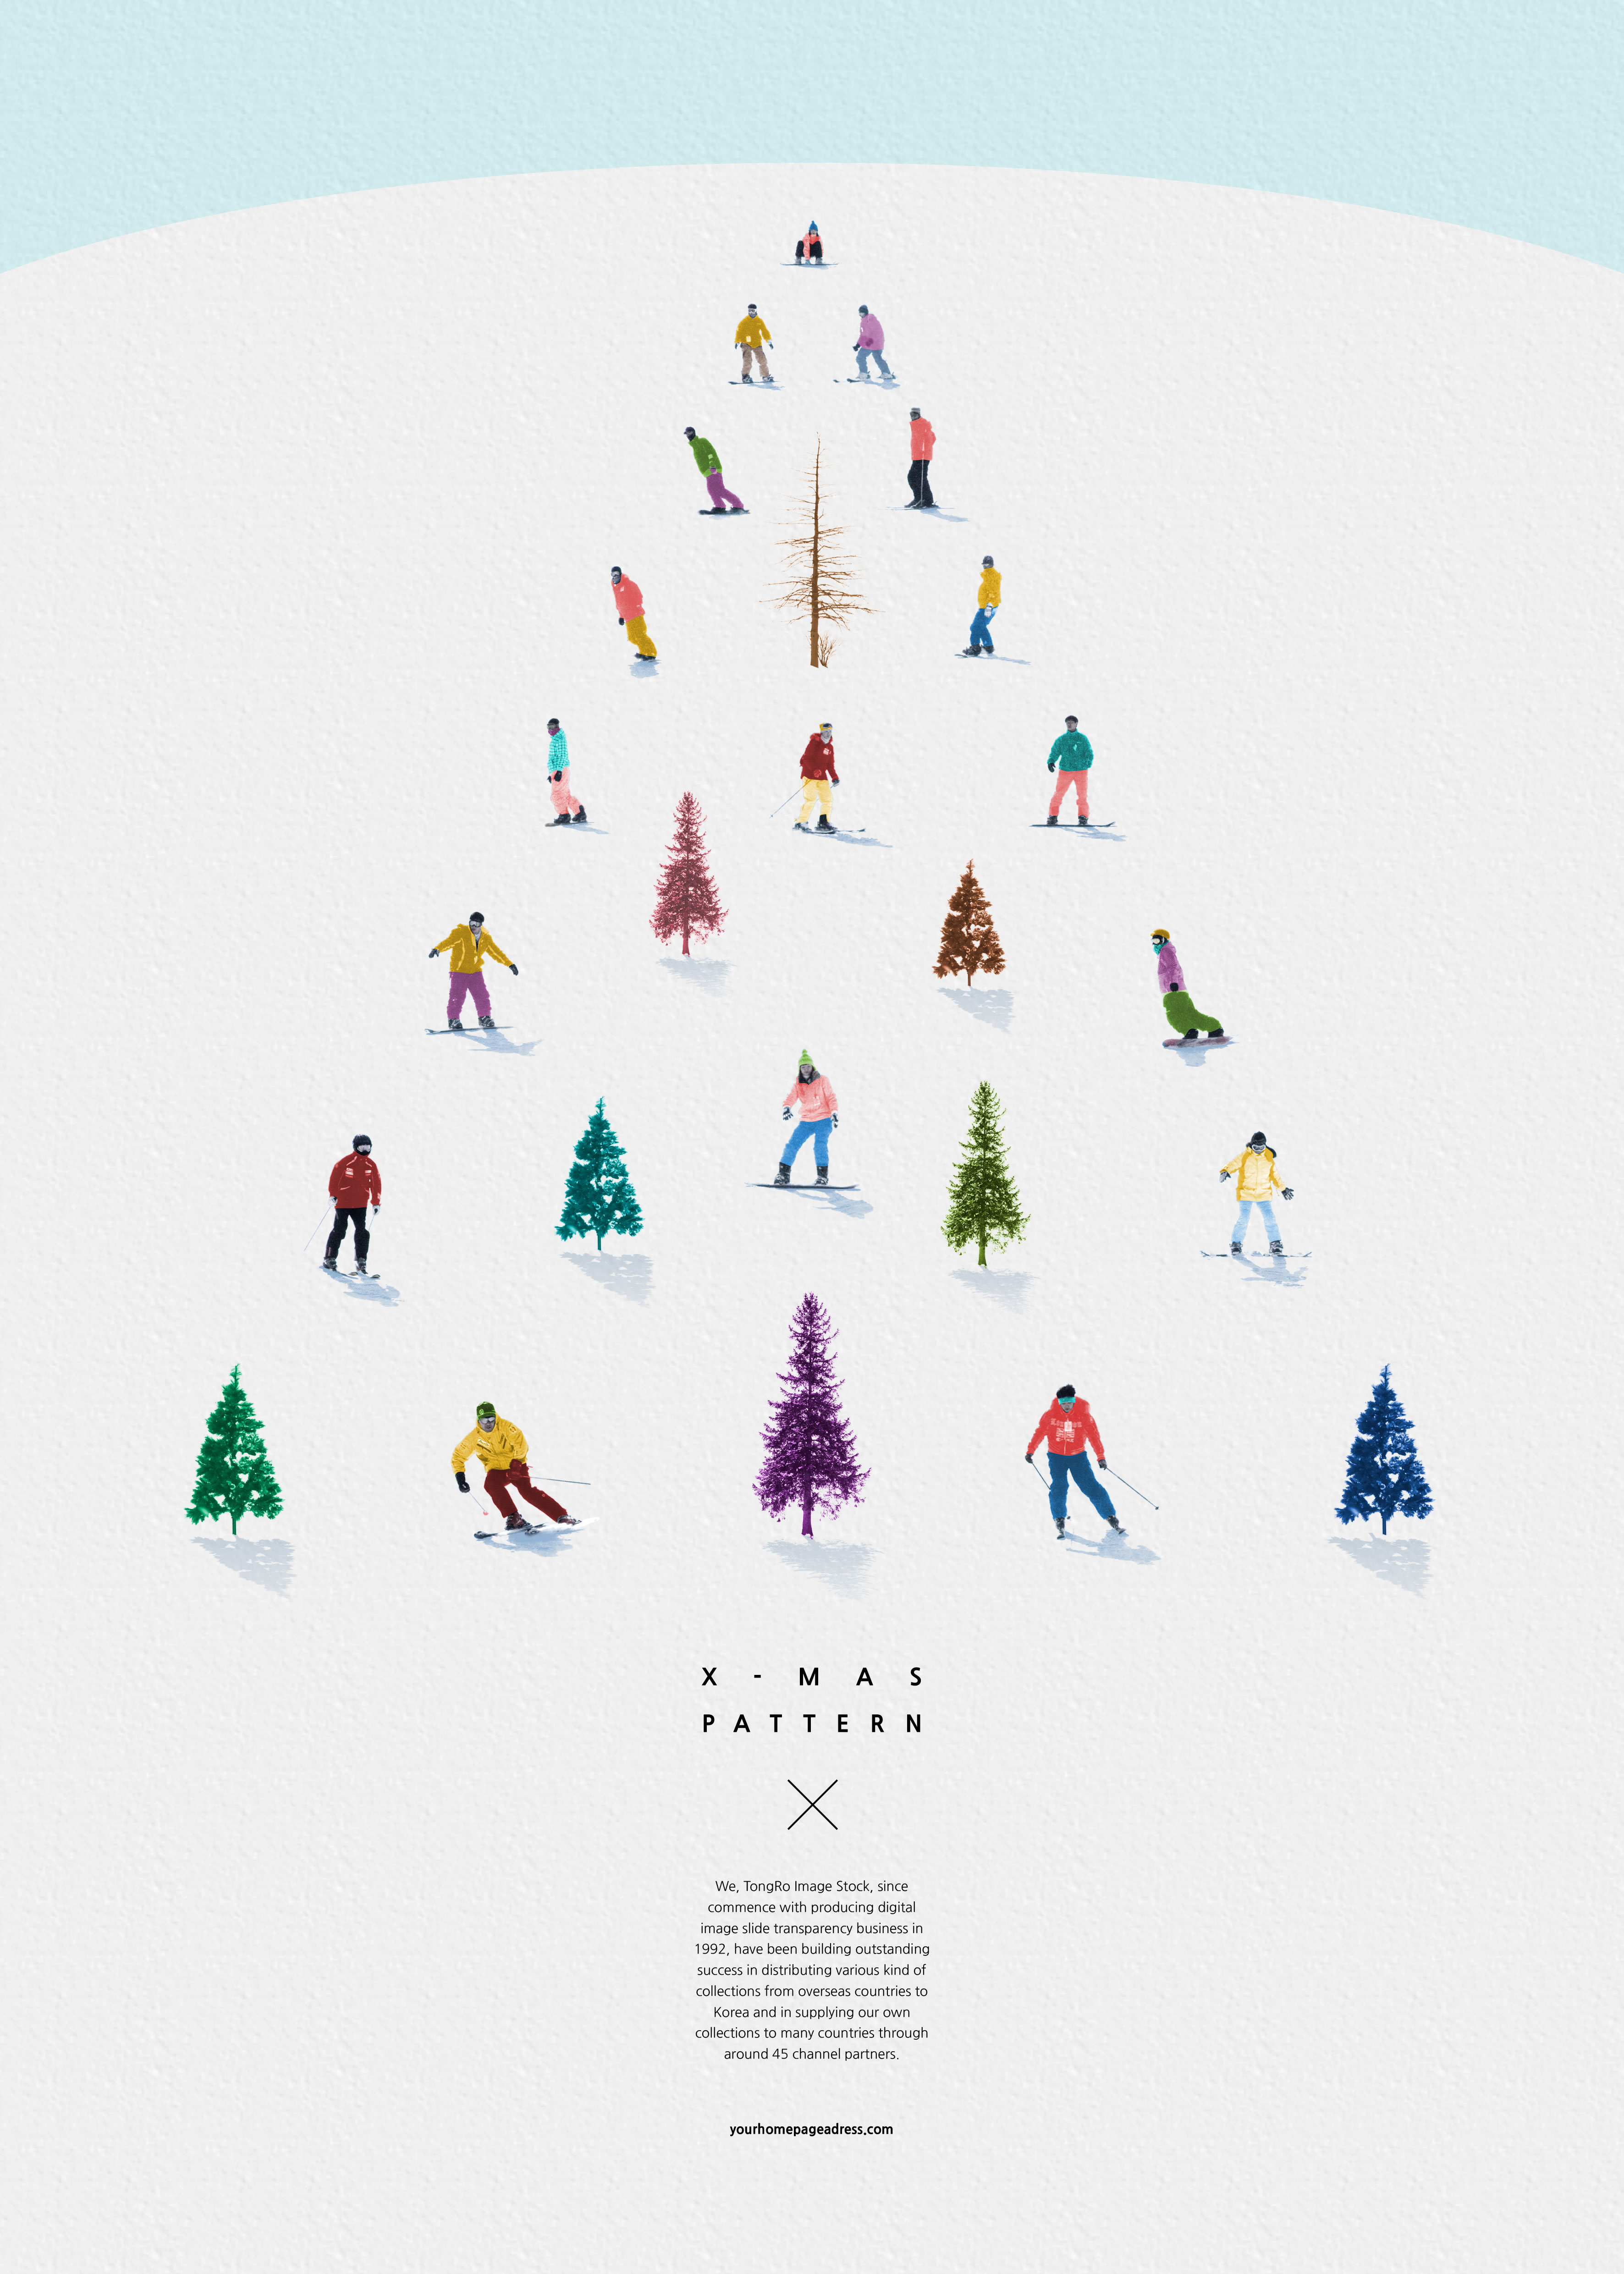 创意冬季滑雪圣诞树元素圣诞图案psd素材插图